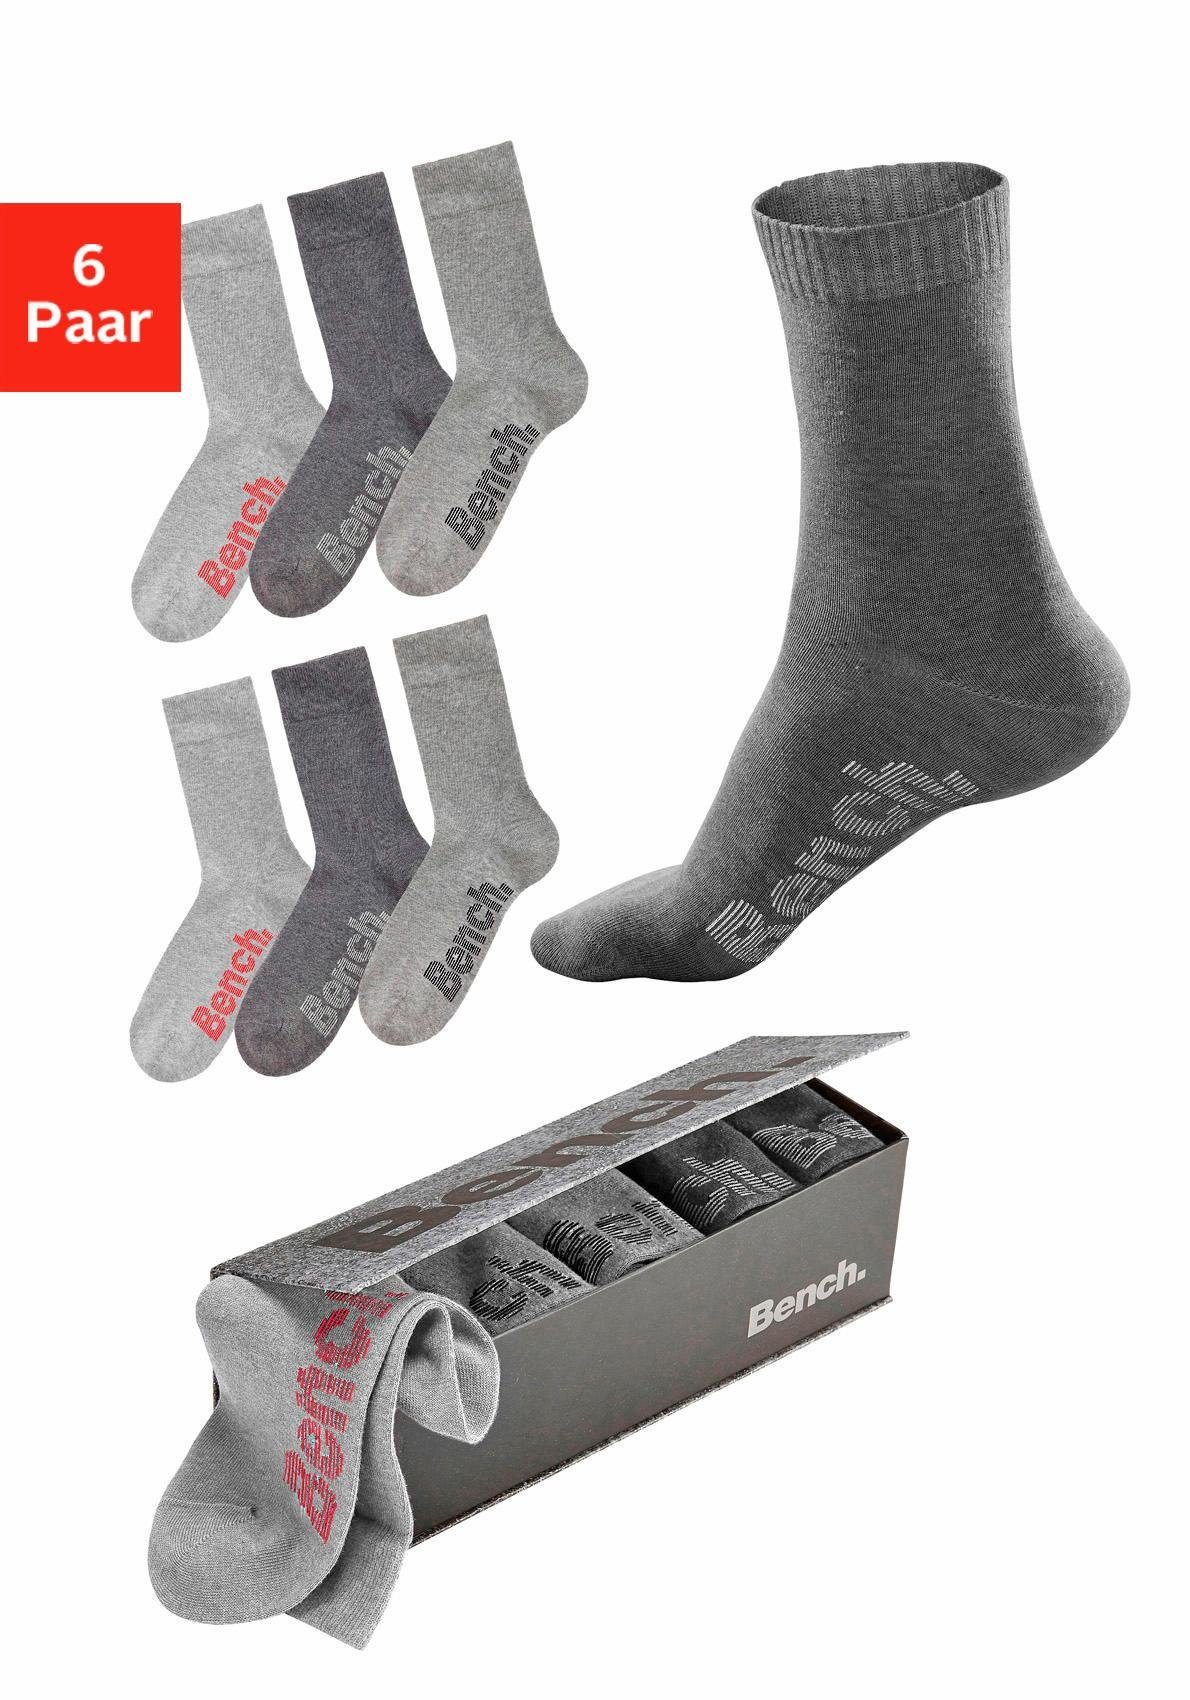 Bench. Socken (Set, 6-Paar) mit verschiedenfarbigen Logos grau-meliert